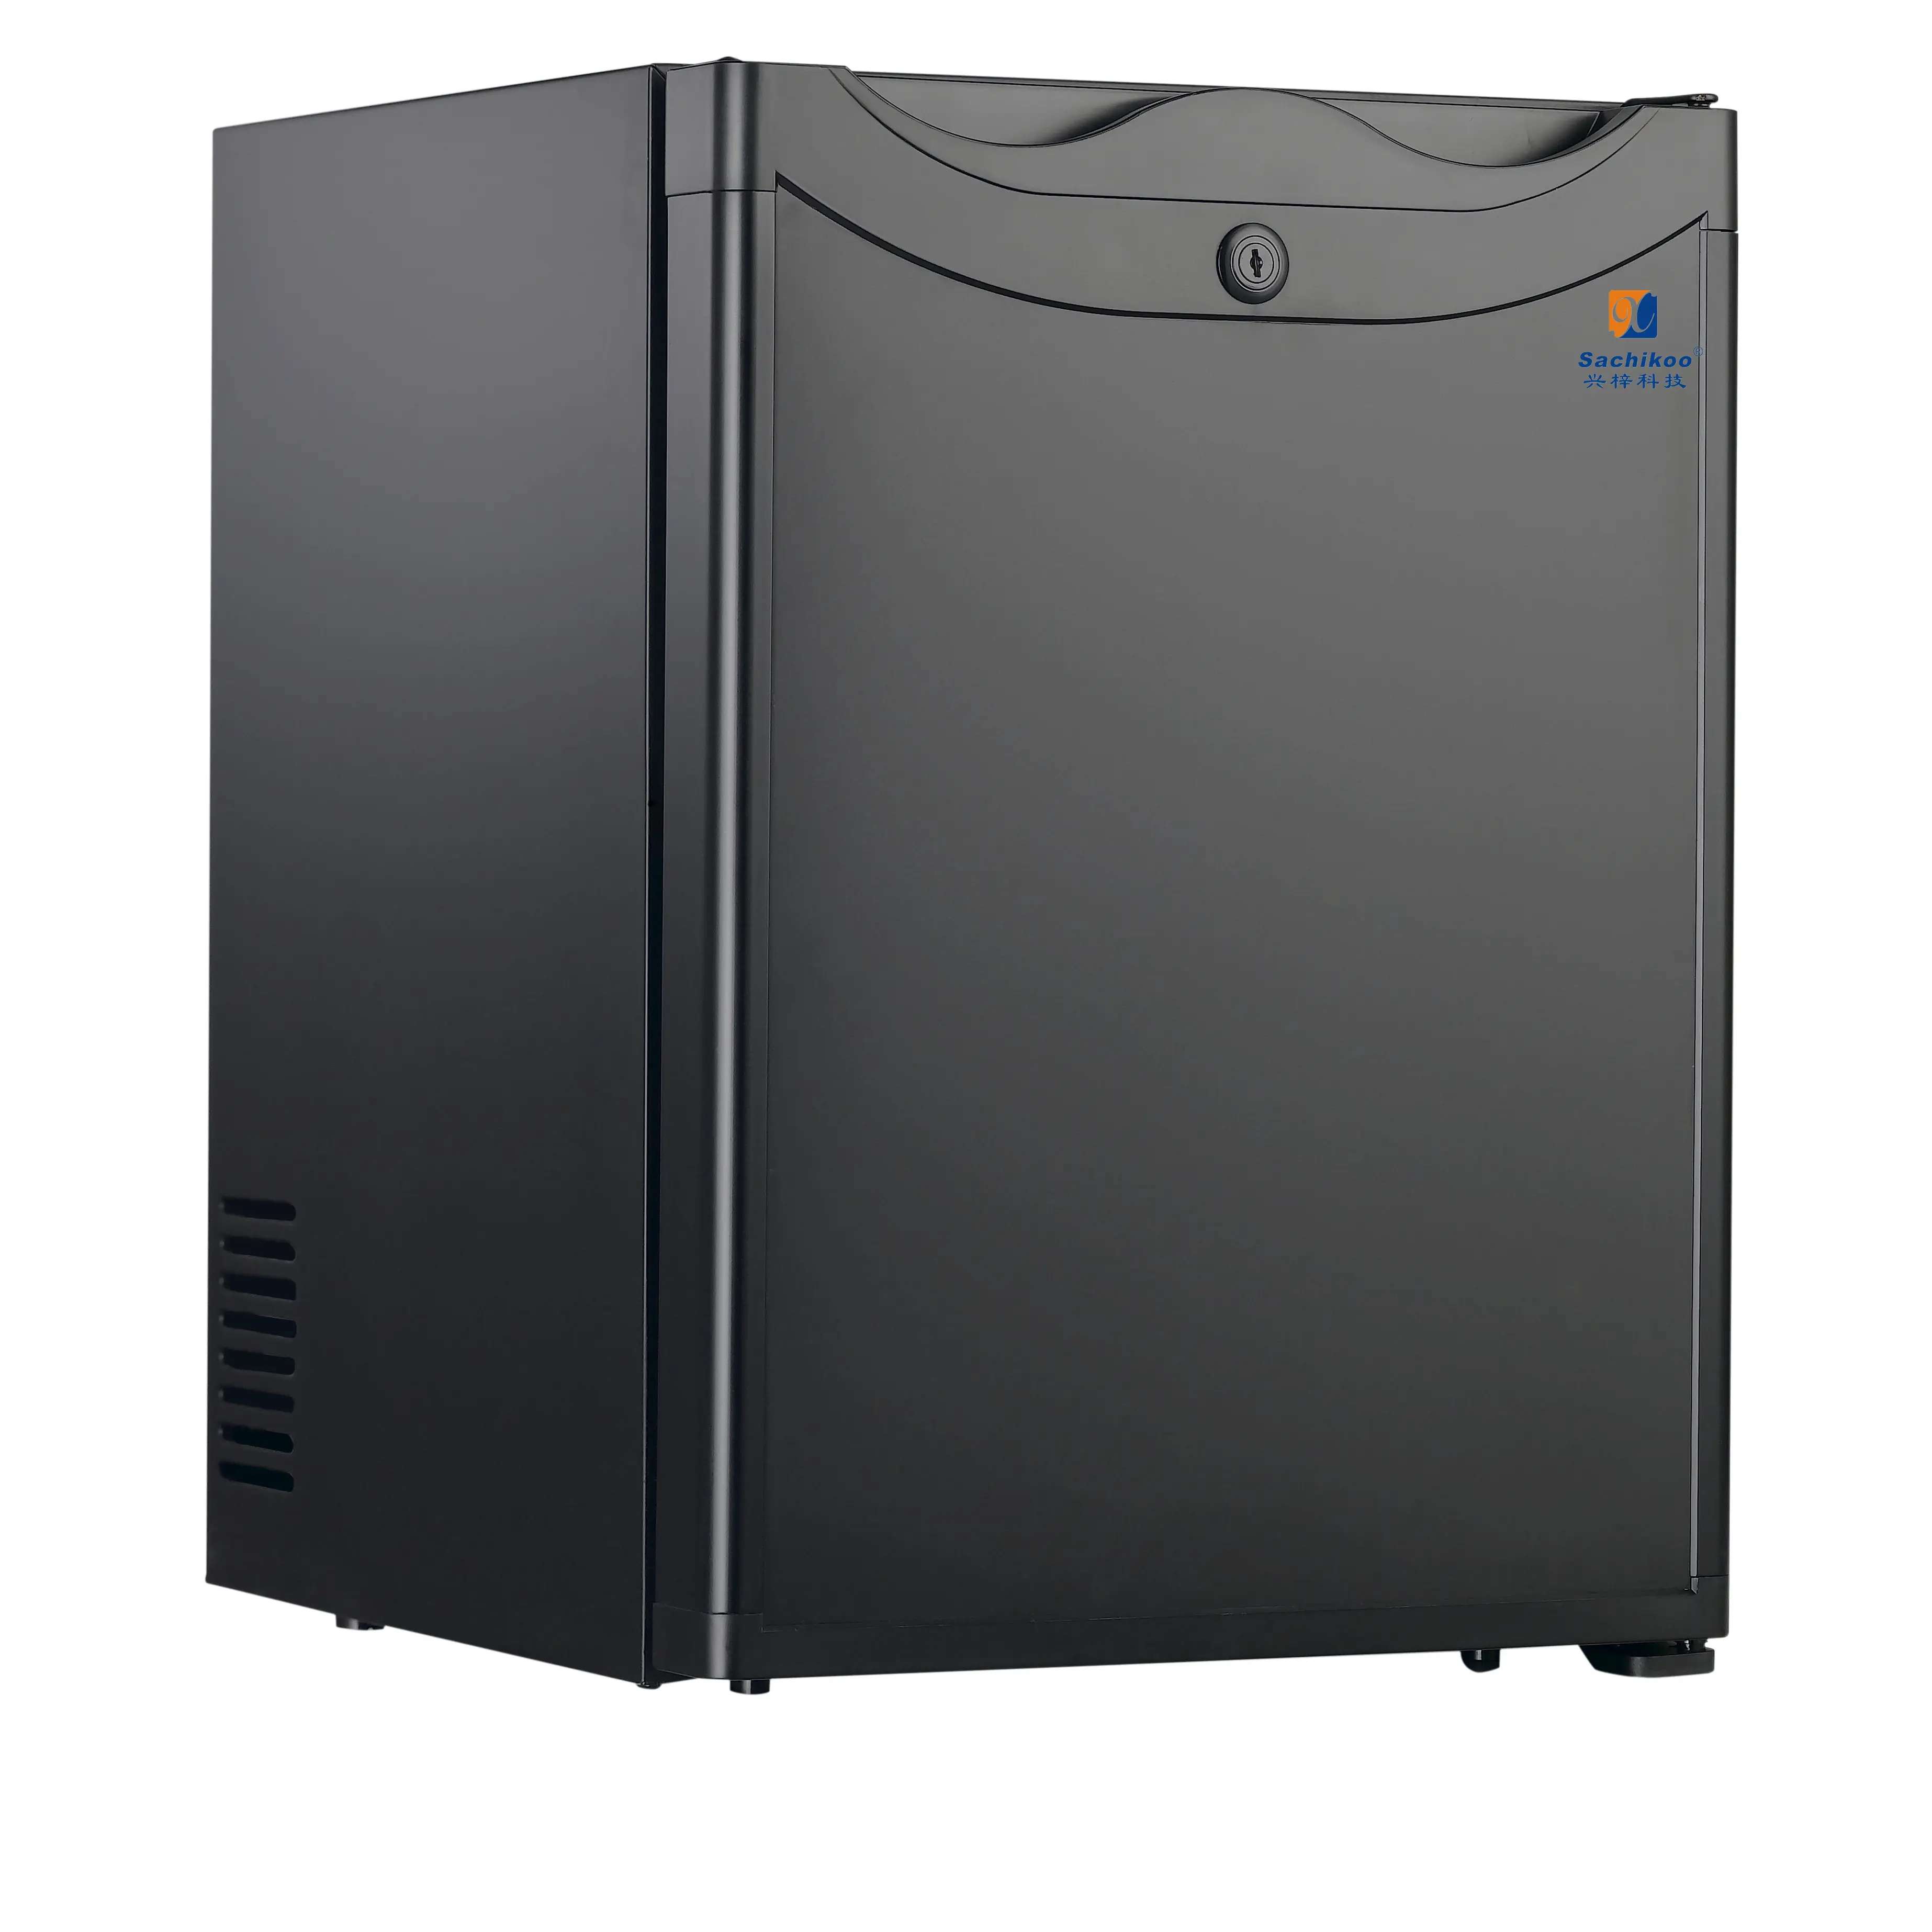 2021 최고의 품질 미니 냉장고 40 65 자동 공기 냉각 소형 미니 쿨러 기능 냉각 휴대용 스테인레스 스틸